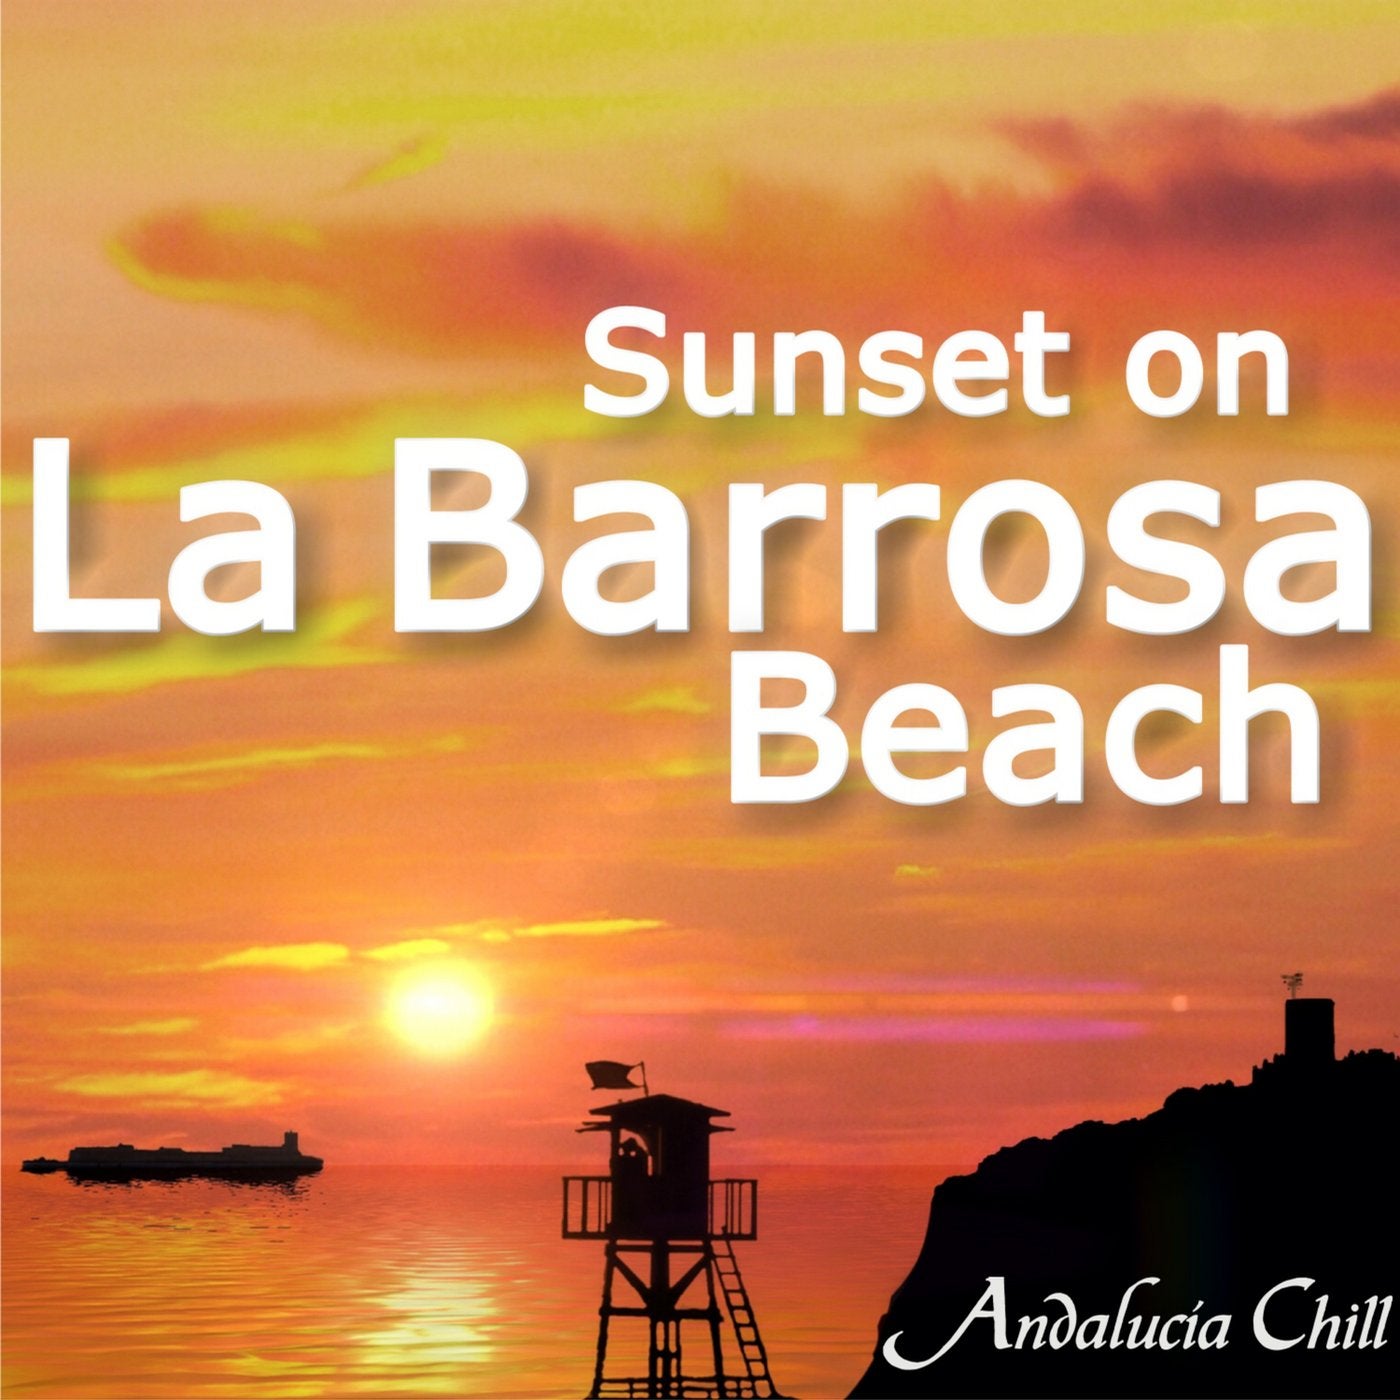 Andalucía Chill - Sunset on La Barrosa Beach